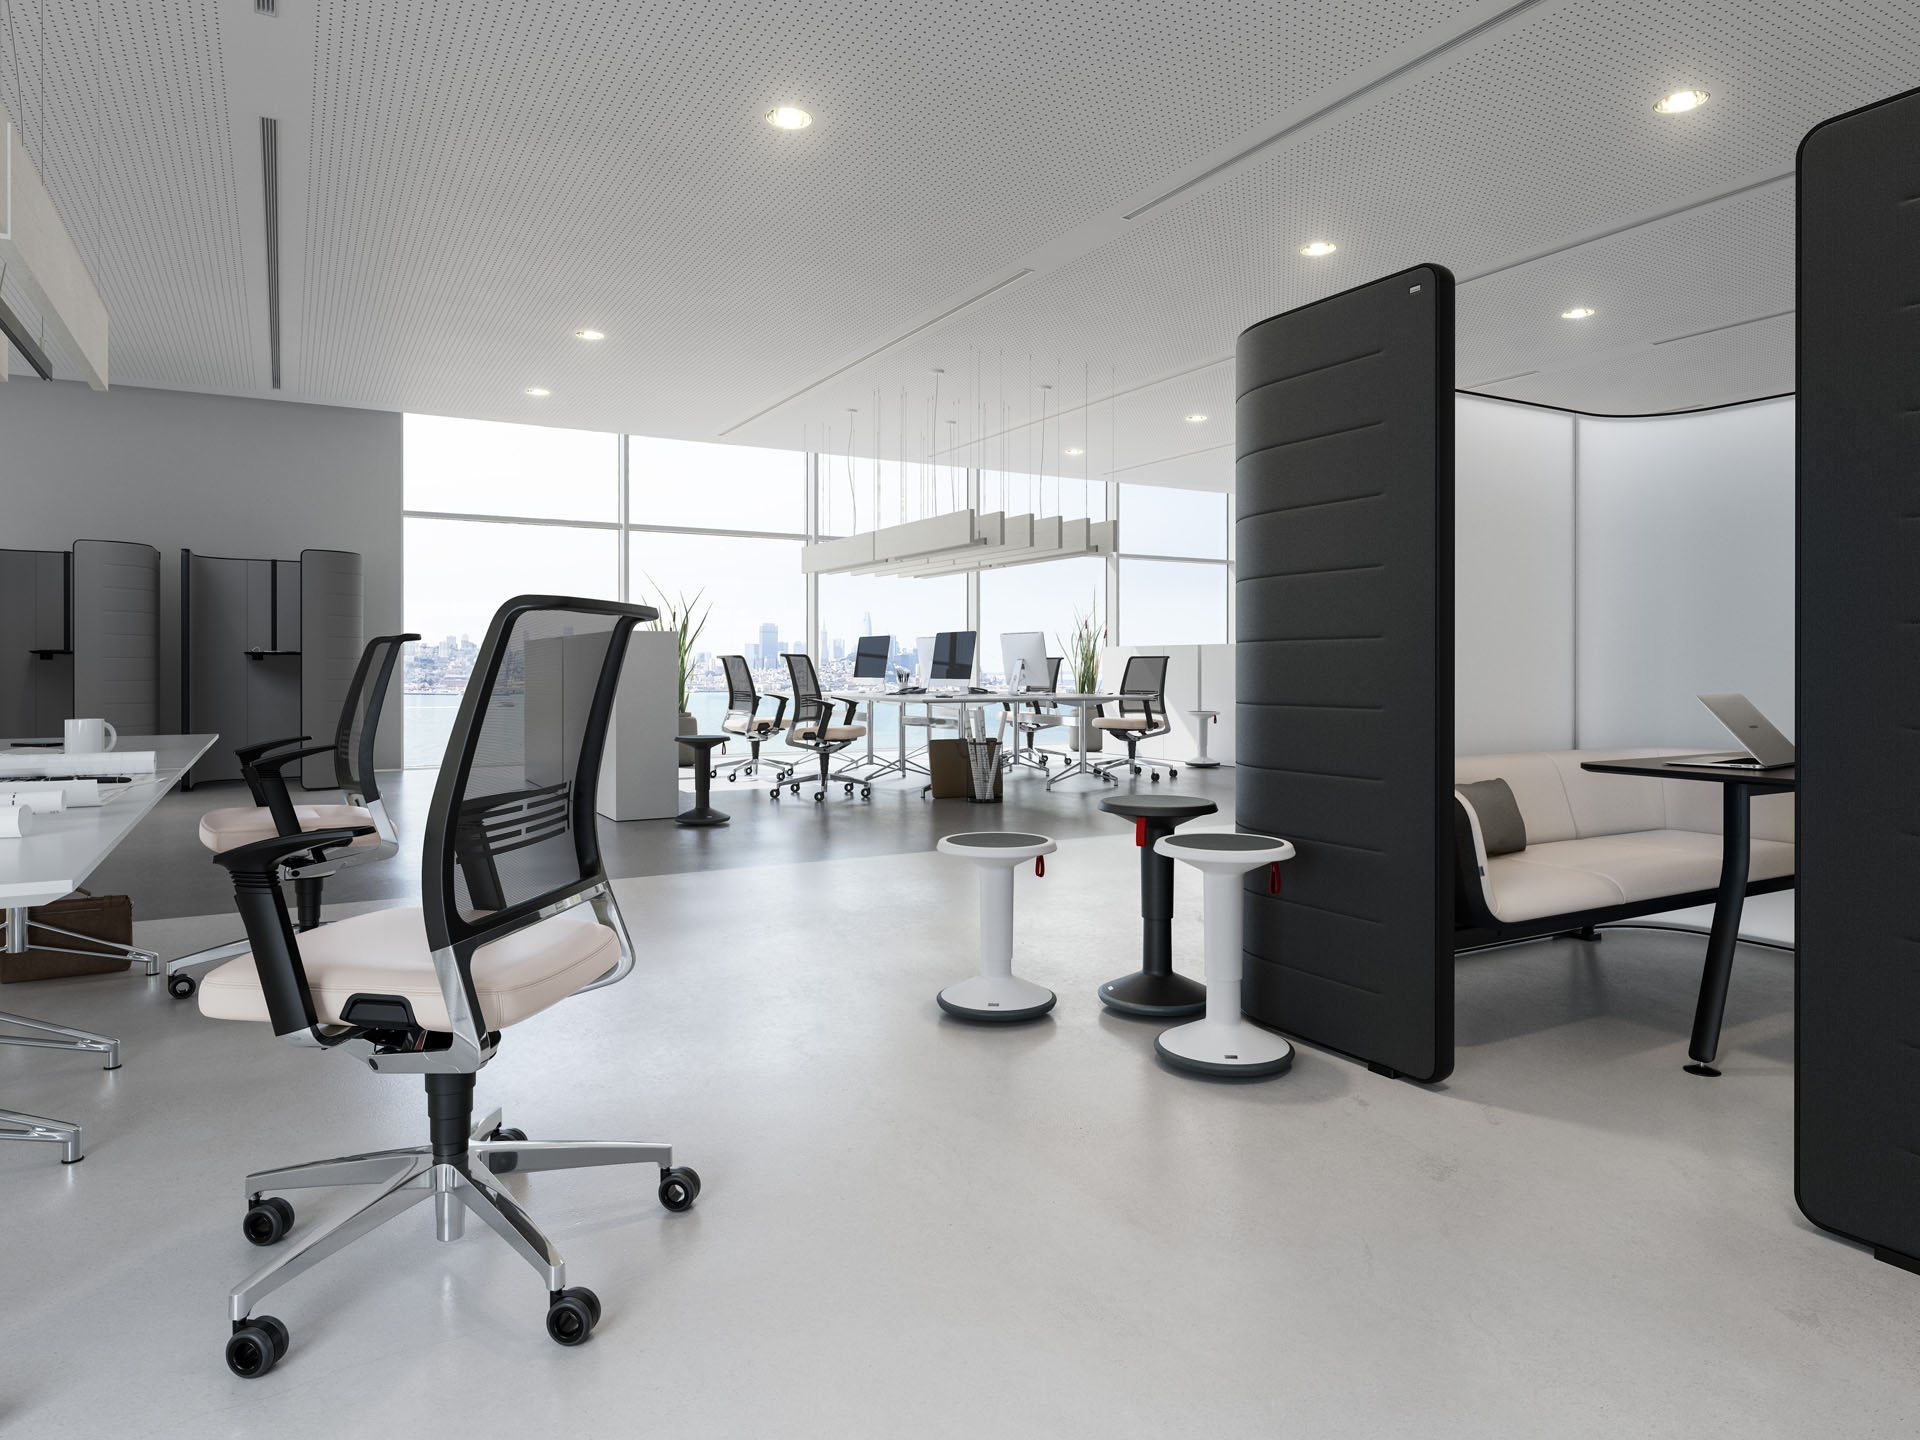 Gutes Arbeiten im Büro ermöglichen – mit den optimalen Raumlösungen und Konzepten für Büroräume von B&DT